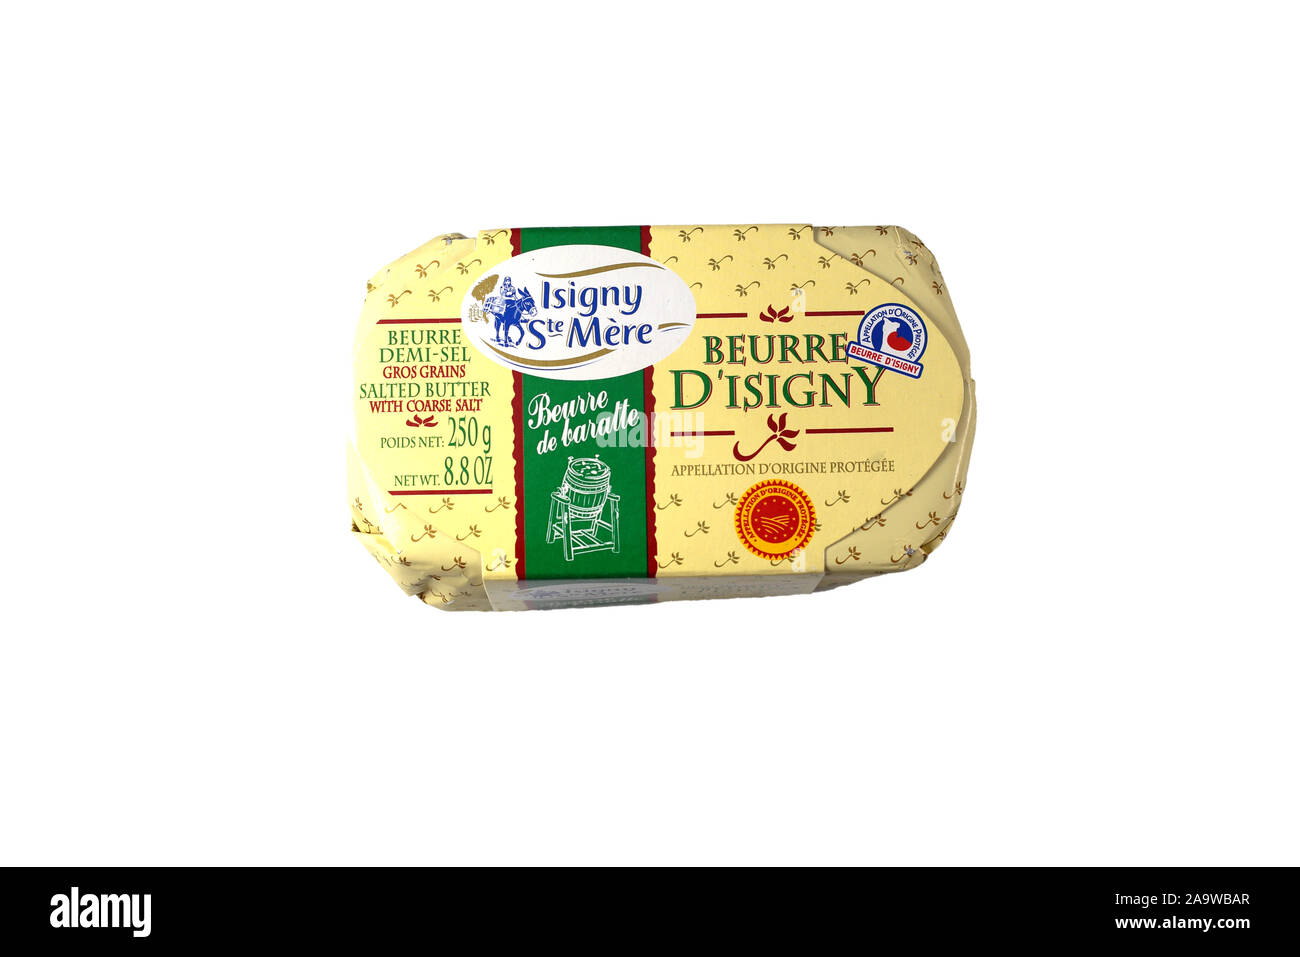 Isigny Ste Mere gesalzene Butter isoliert auf weißem Hintergrund. Ausschnitt Bild für Illustration und redaktionelle Verwendung. französisch Butter. Stockfoto